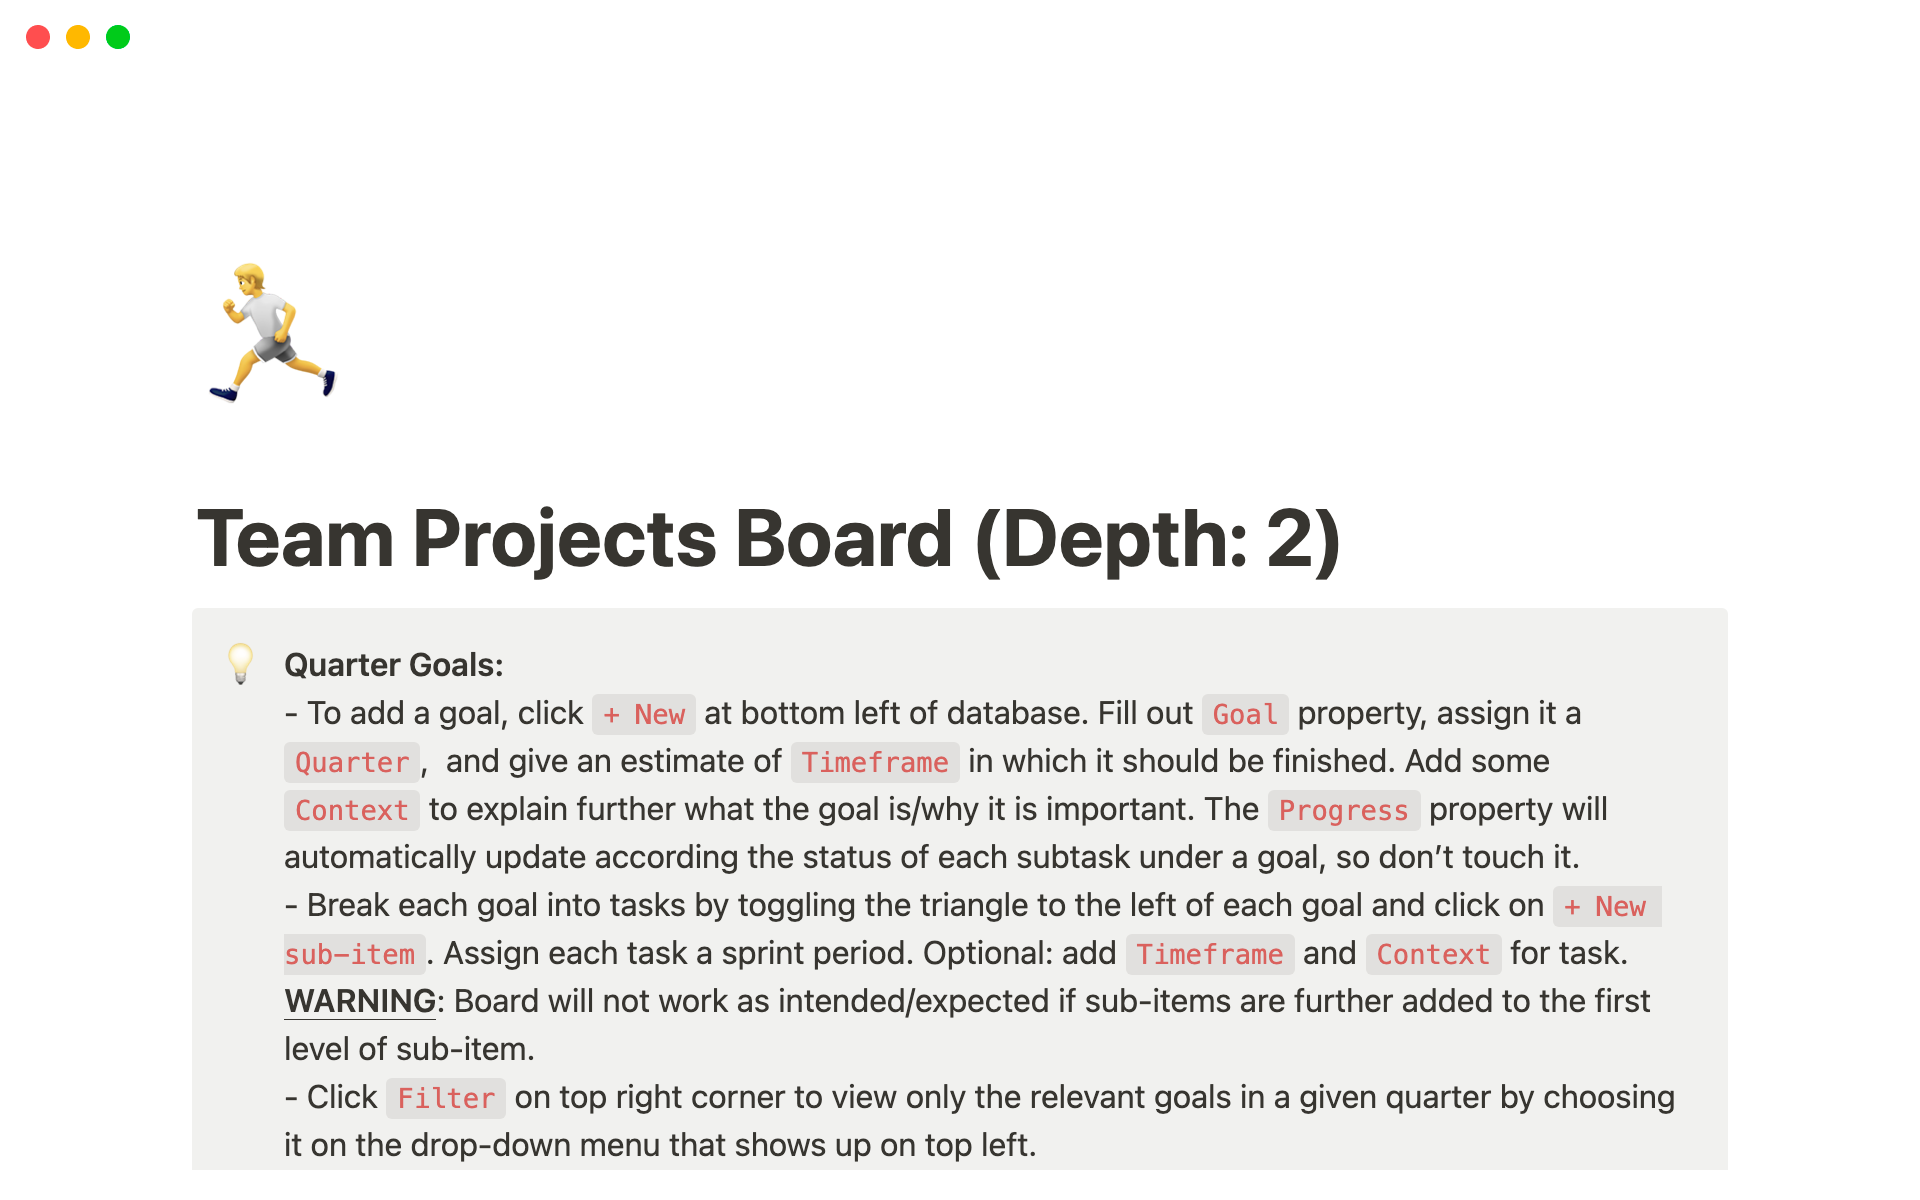 Uma prévia do modelo para Team Projects Board